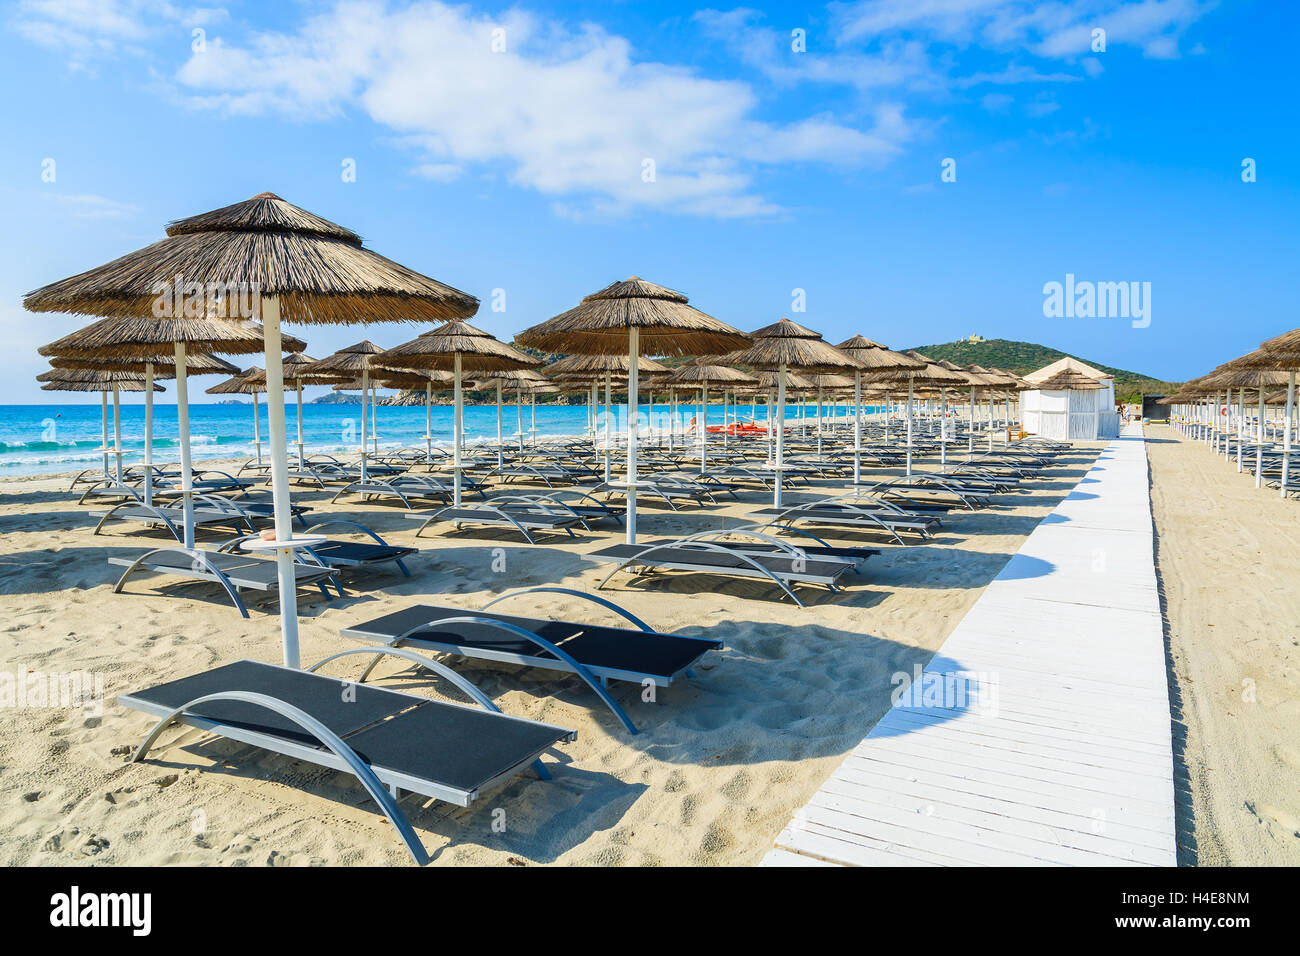 Chemin le long de chaises longues avec parasols sur la plage de sable blanc dans la baie de Porto Giunco, Sardaigne, île, Italie Banque D'Images